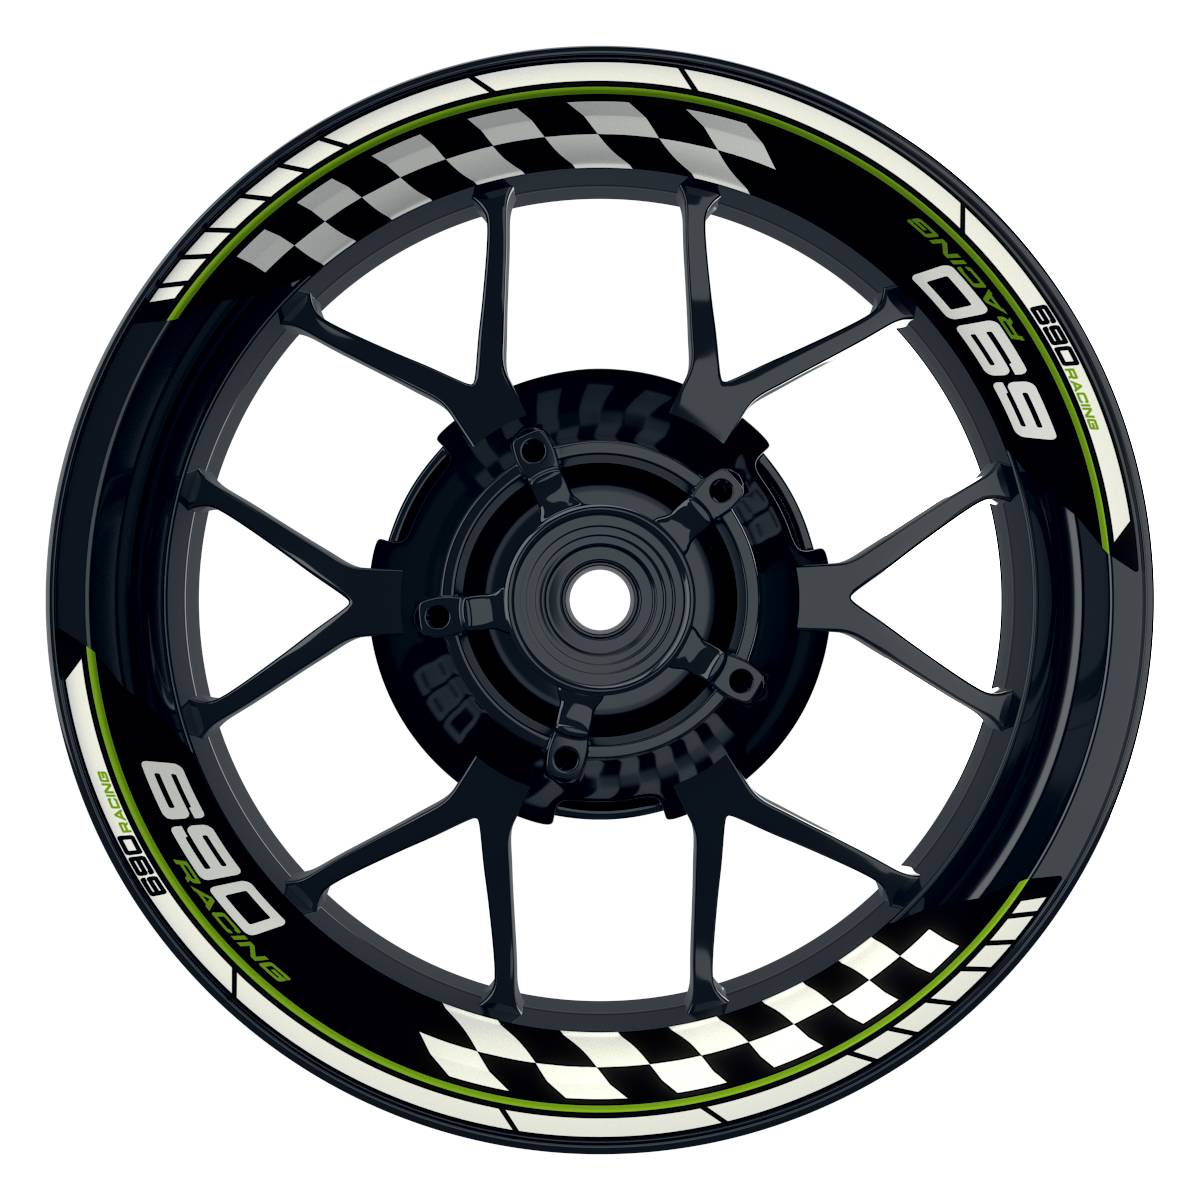 KTM Racing 690 Grid schwarz gruen Frontansicht